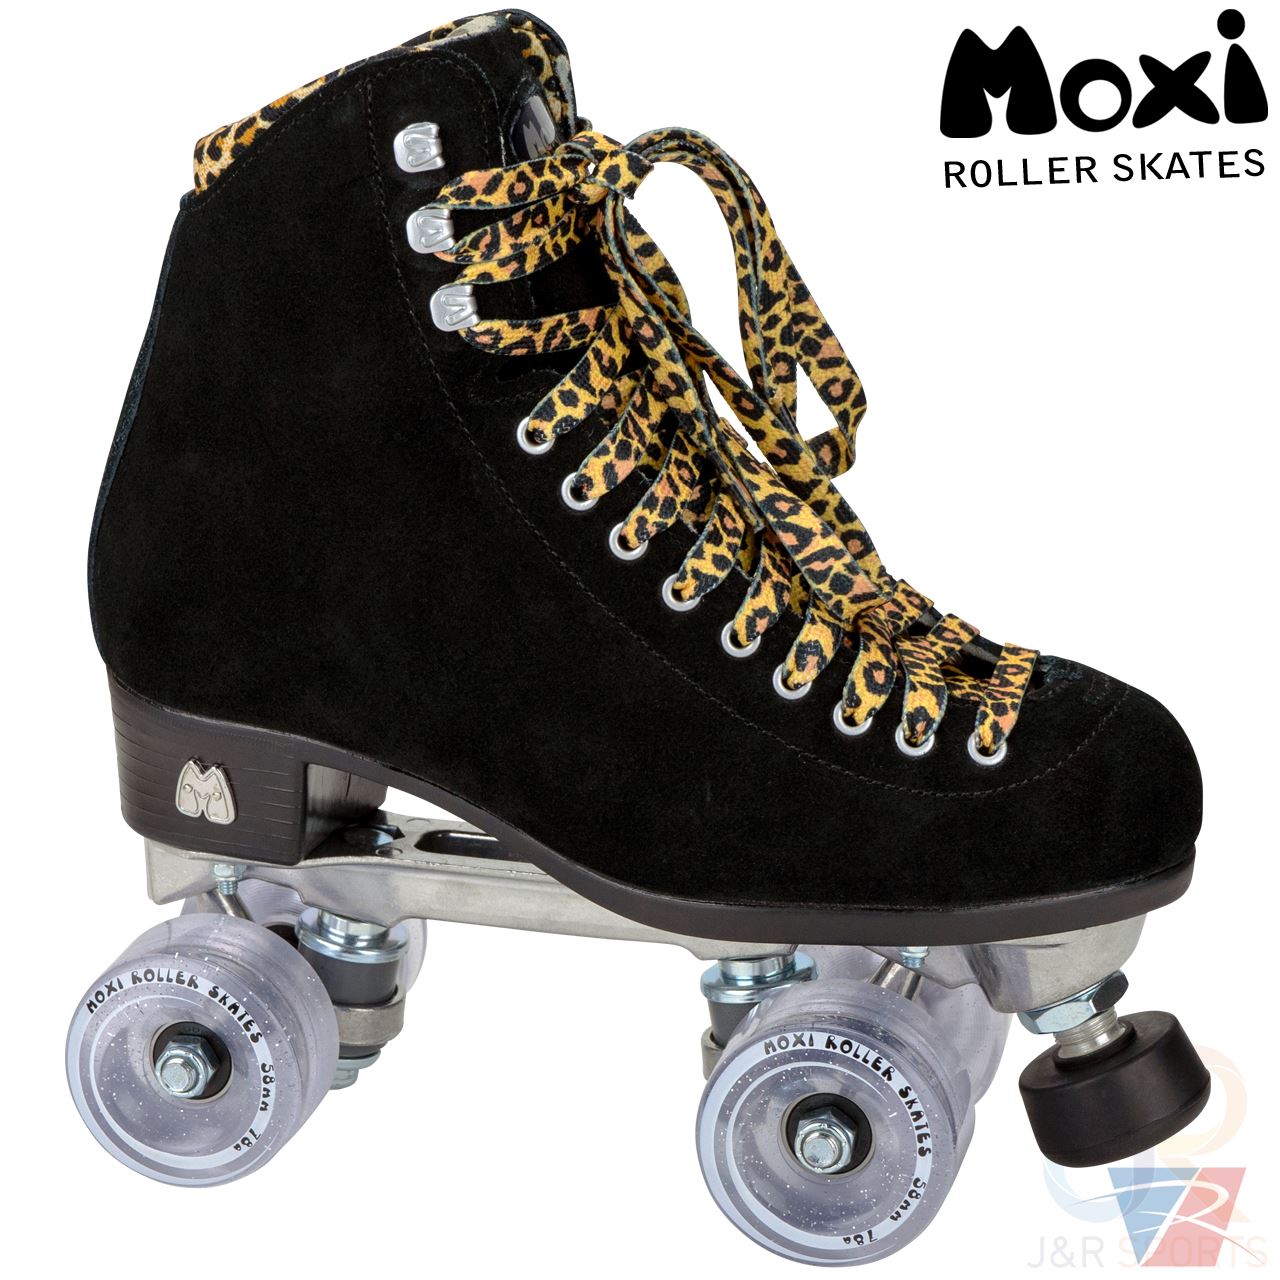 Moxi Panther Skates